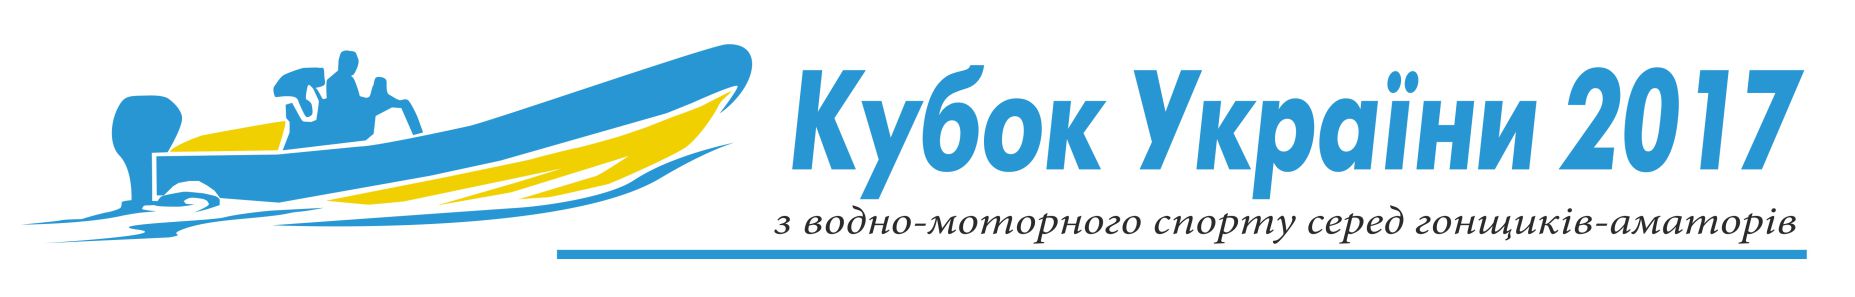 Кубок України з водно-моторного спорту 2017 року, гонки водно-моторные, кубок водно-моторного спорта